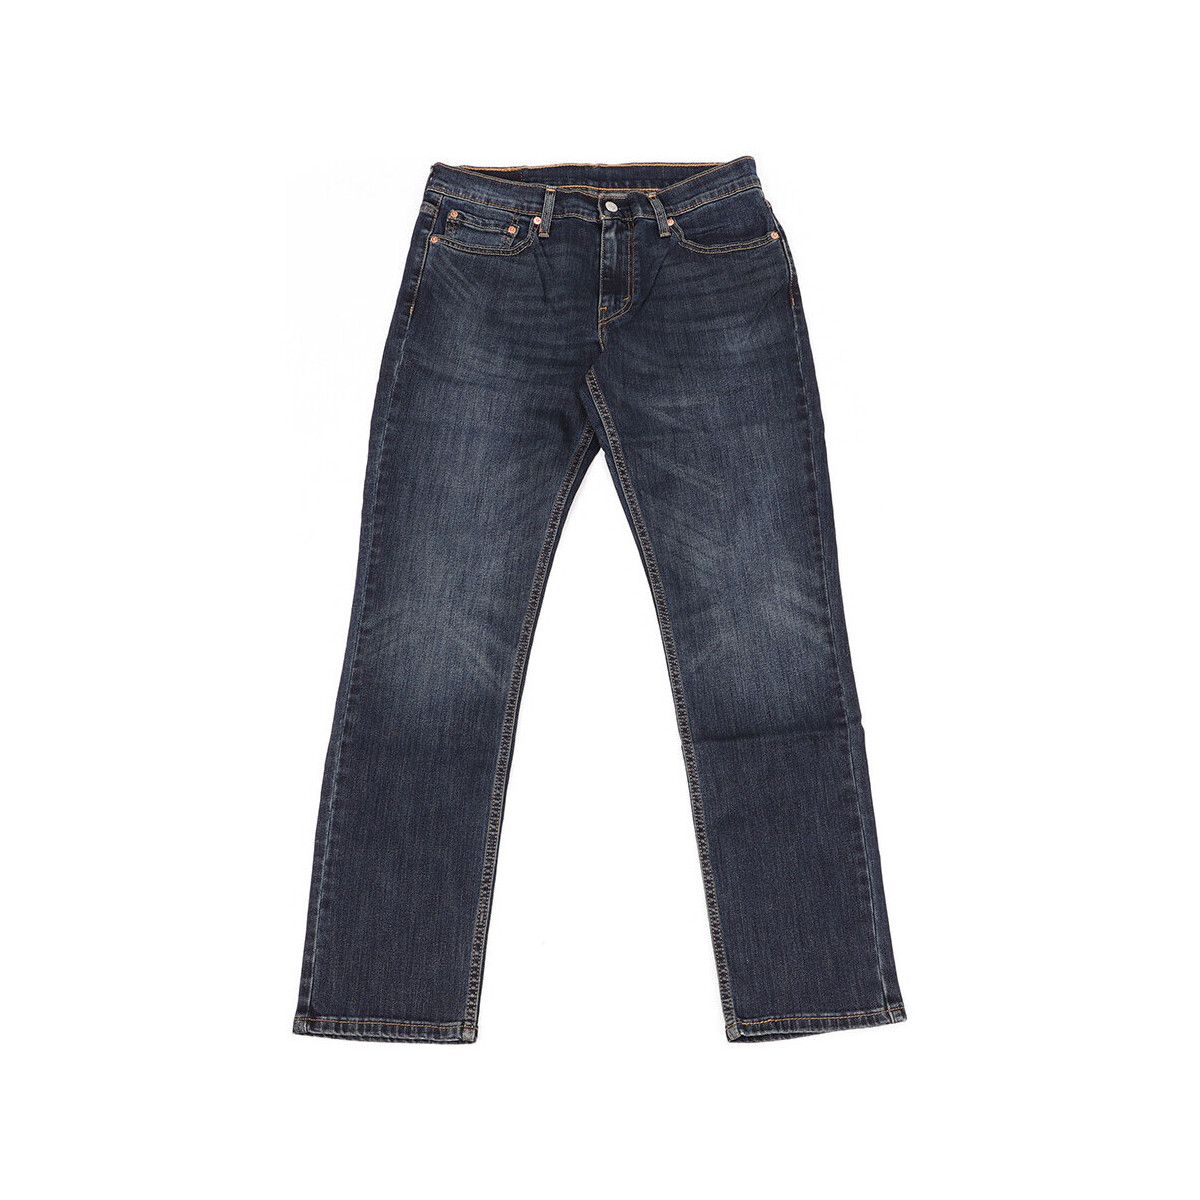 Vêtements Homme Jeans slim Levi's 04511-1390 Bleu